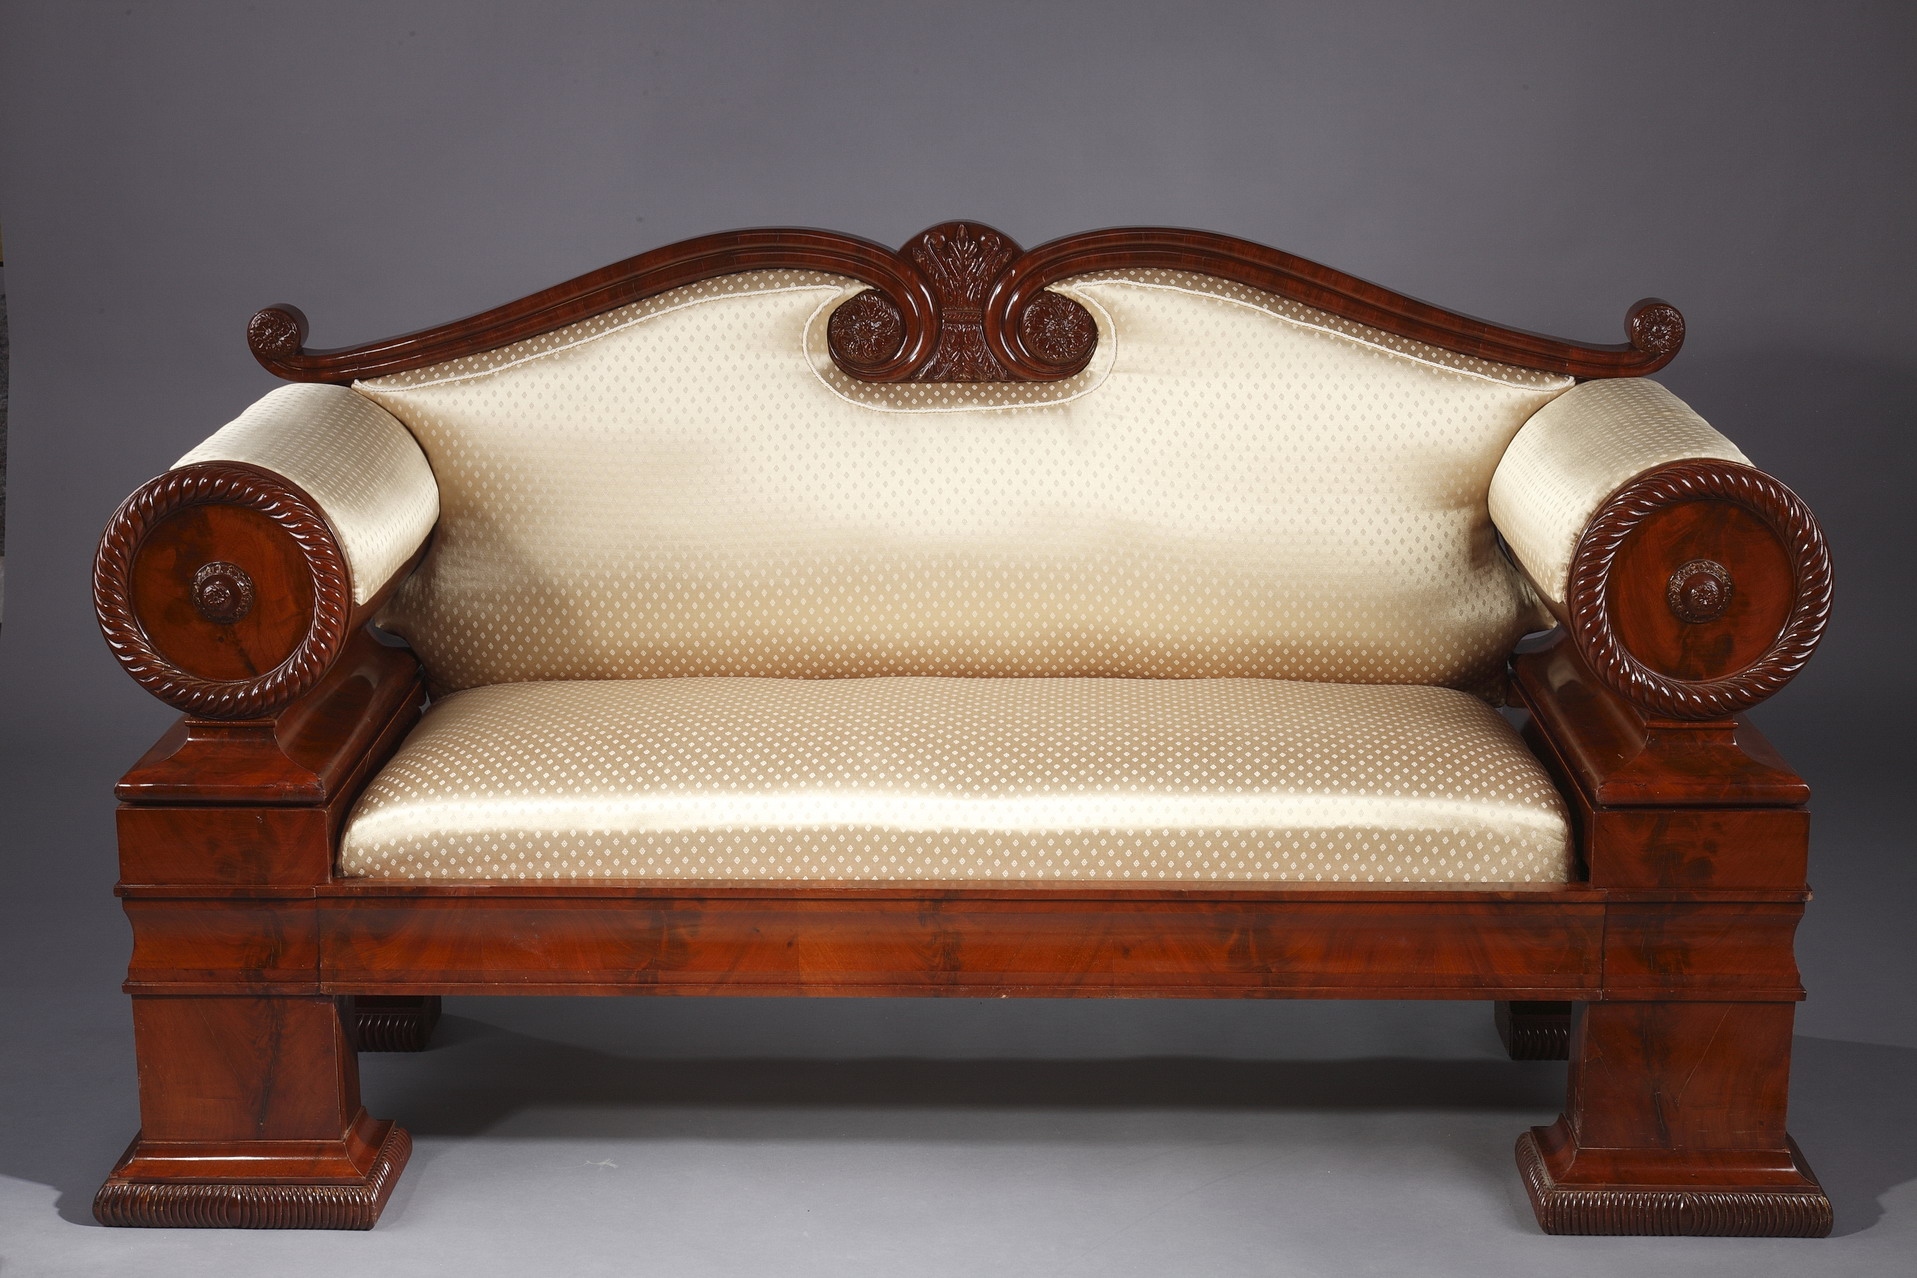 Canapé en acajou massif, tapissé de soie moirée, XIXe